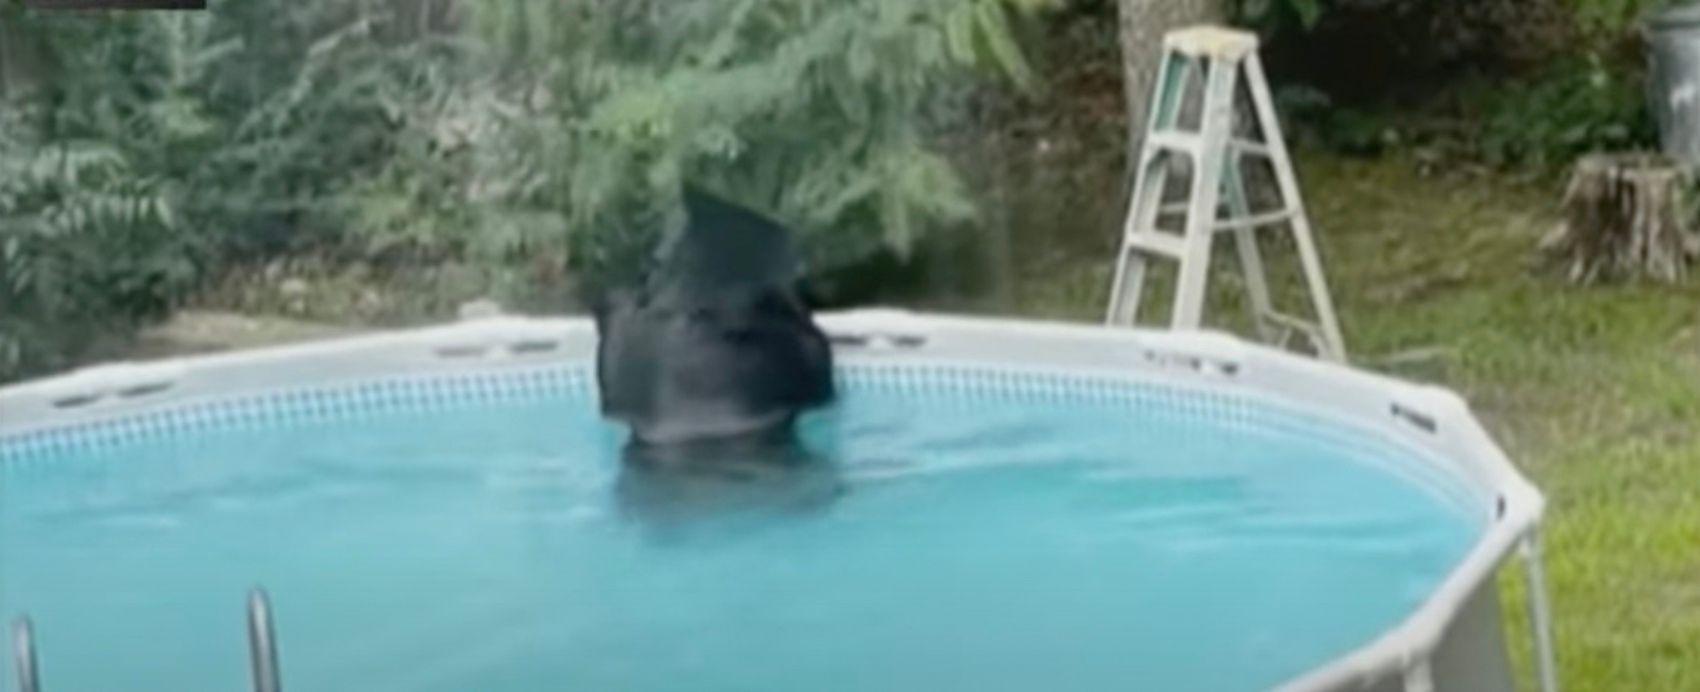 Ведмідь вирішив освіжитися в чужому басейні